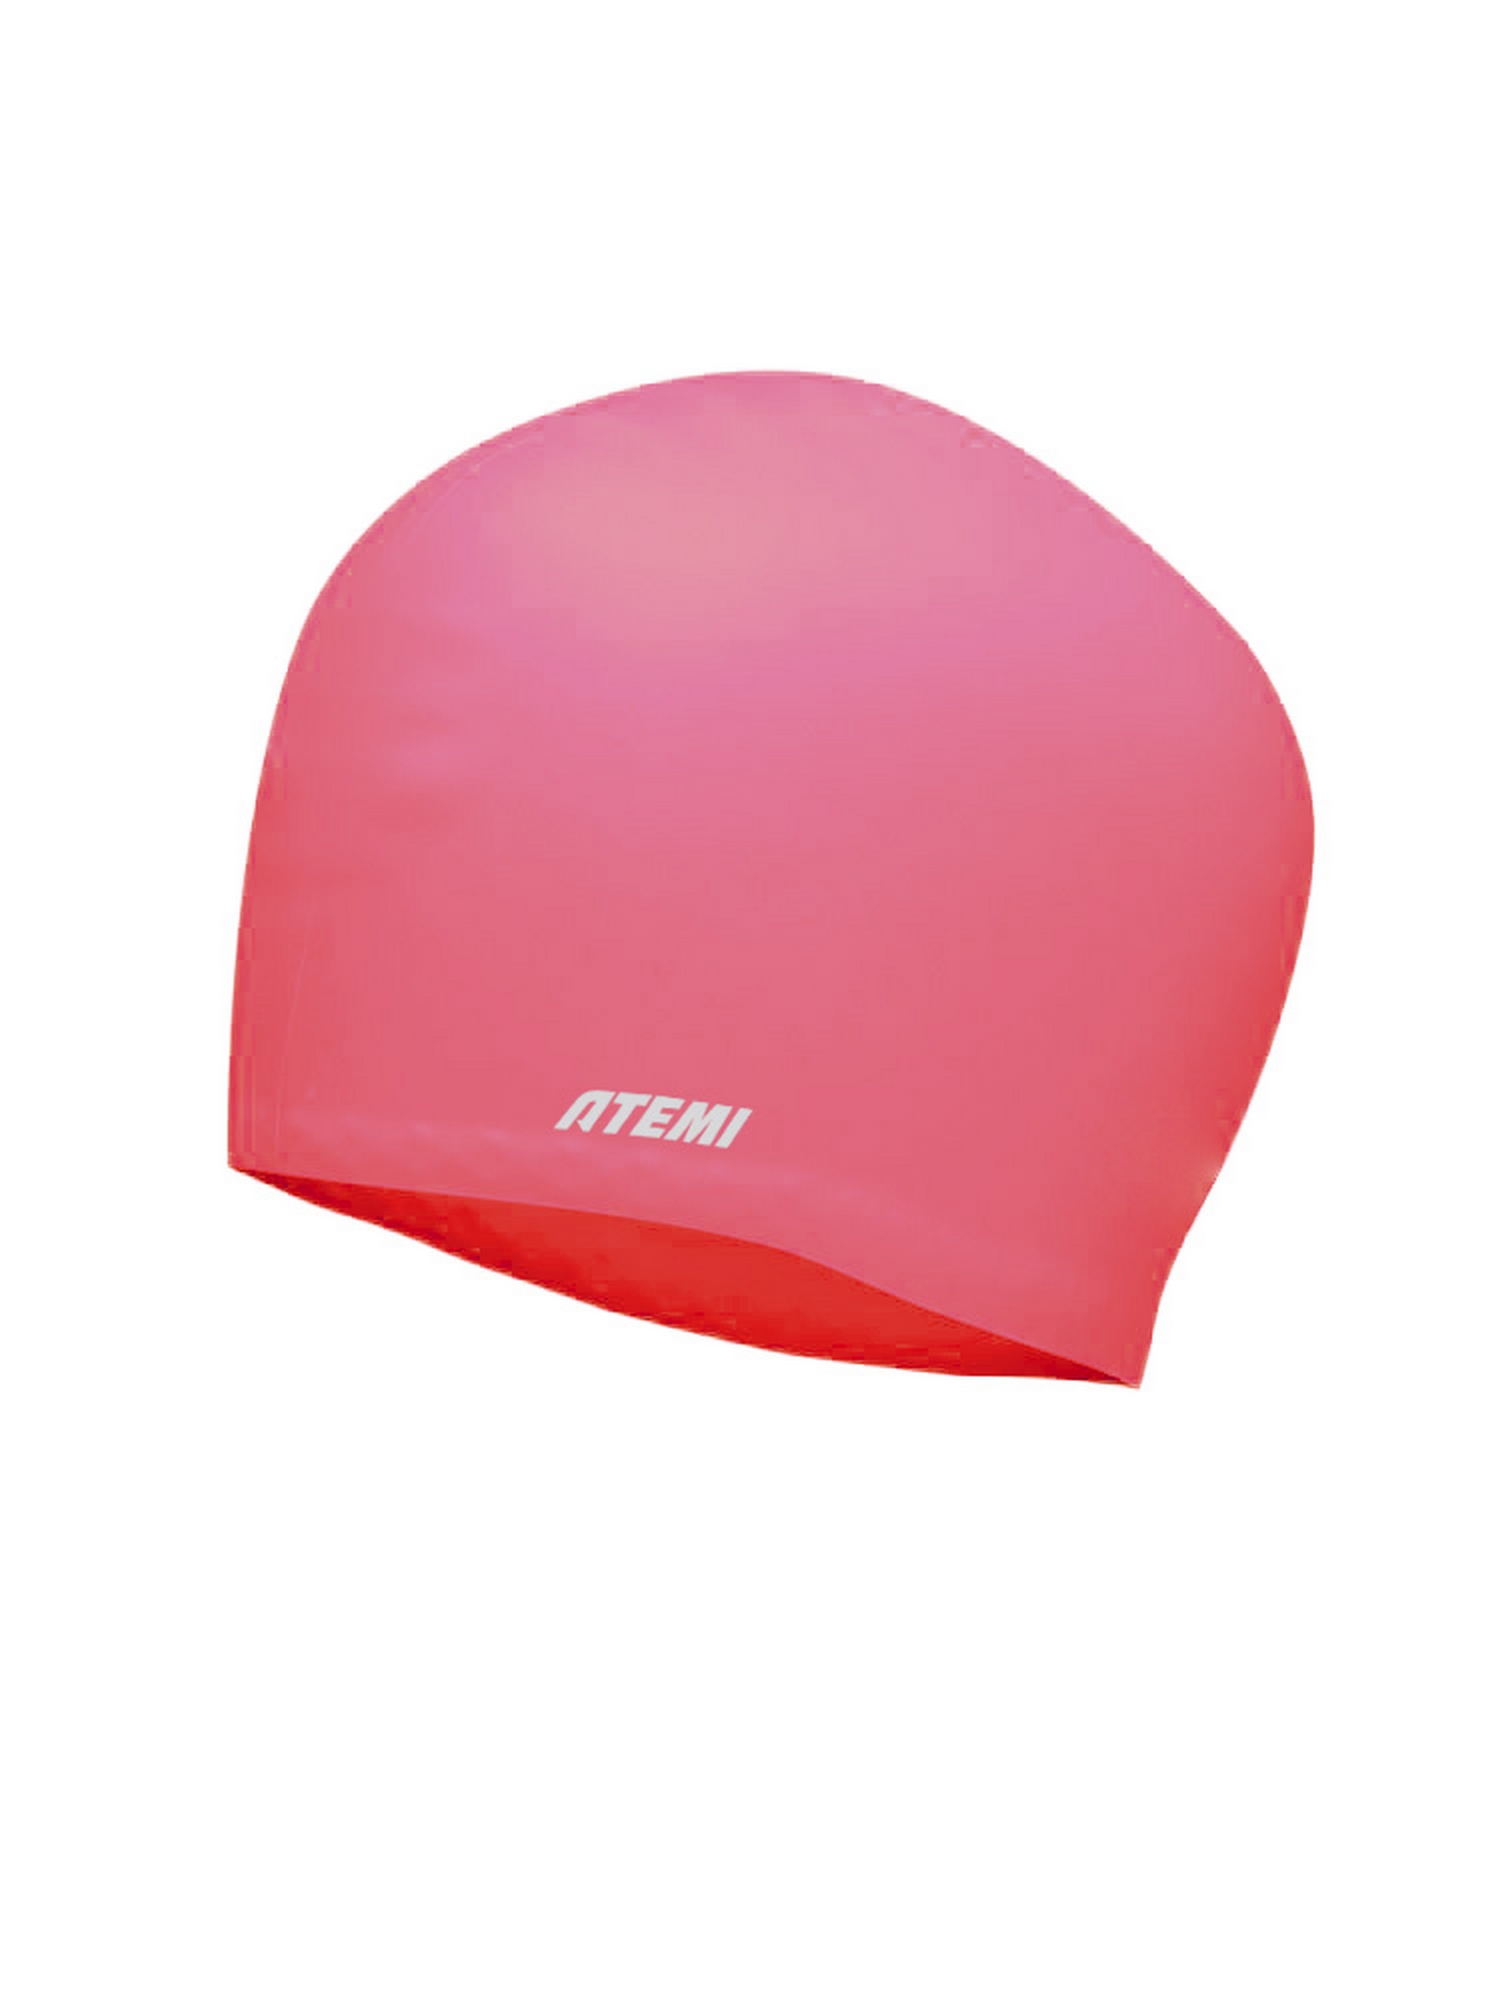 Шапочка для плавания Atemi long hair cap Bright red TLH1R красный 1500_2000